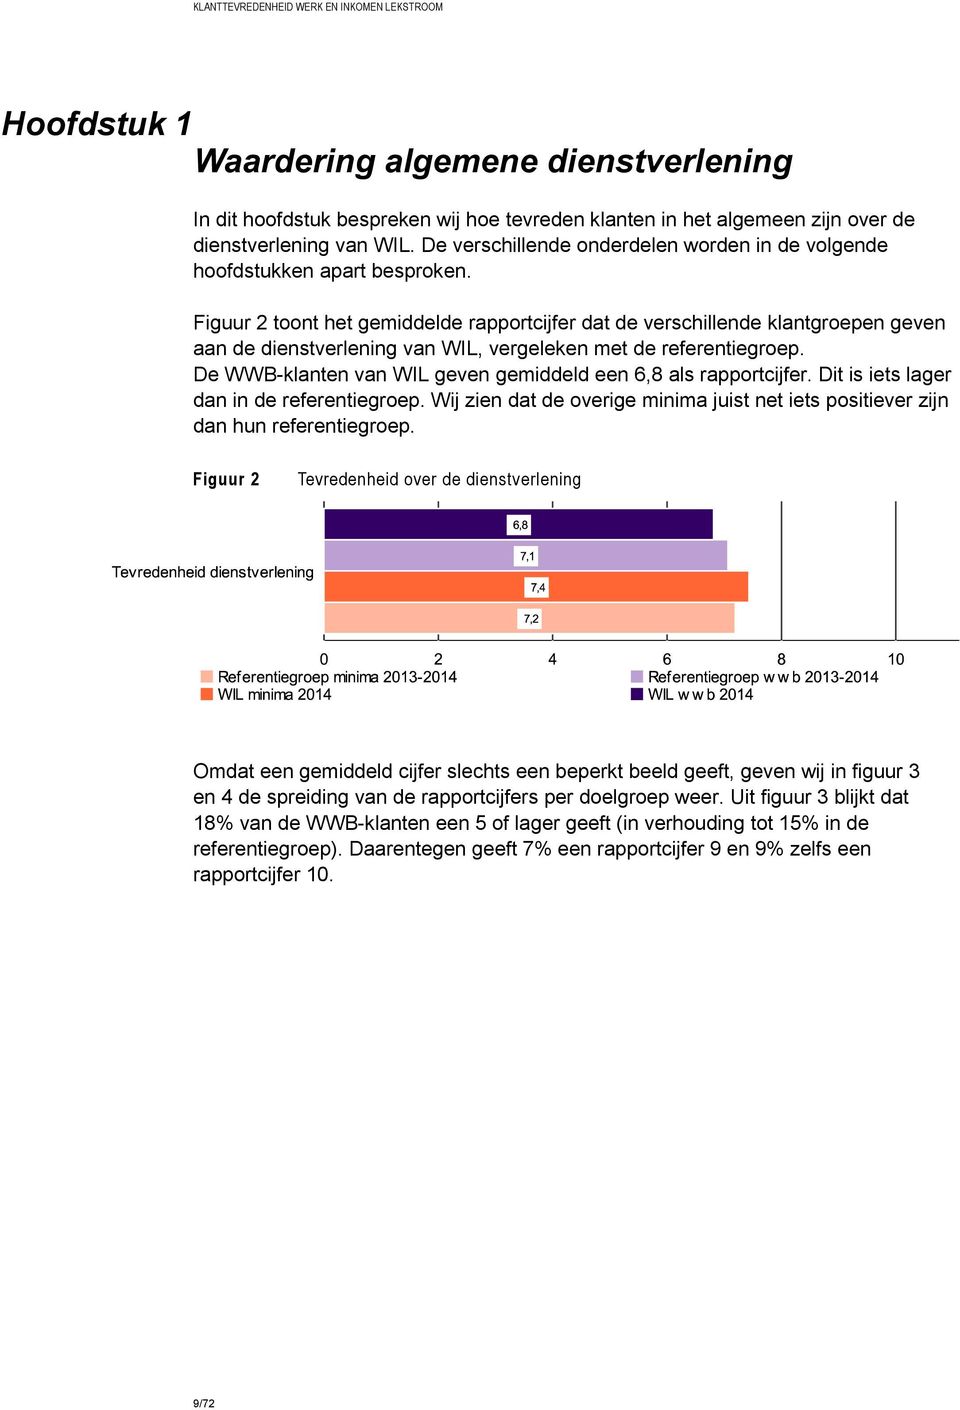 Figuur 2 toont het gemiddelde rapportcijfer dat de verschillende klantgroepen geven aan de dienstverlening van WIL, vergeleken met de referentiegroep.